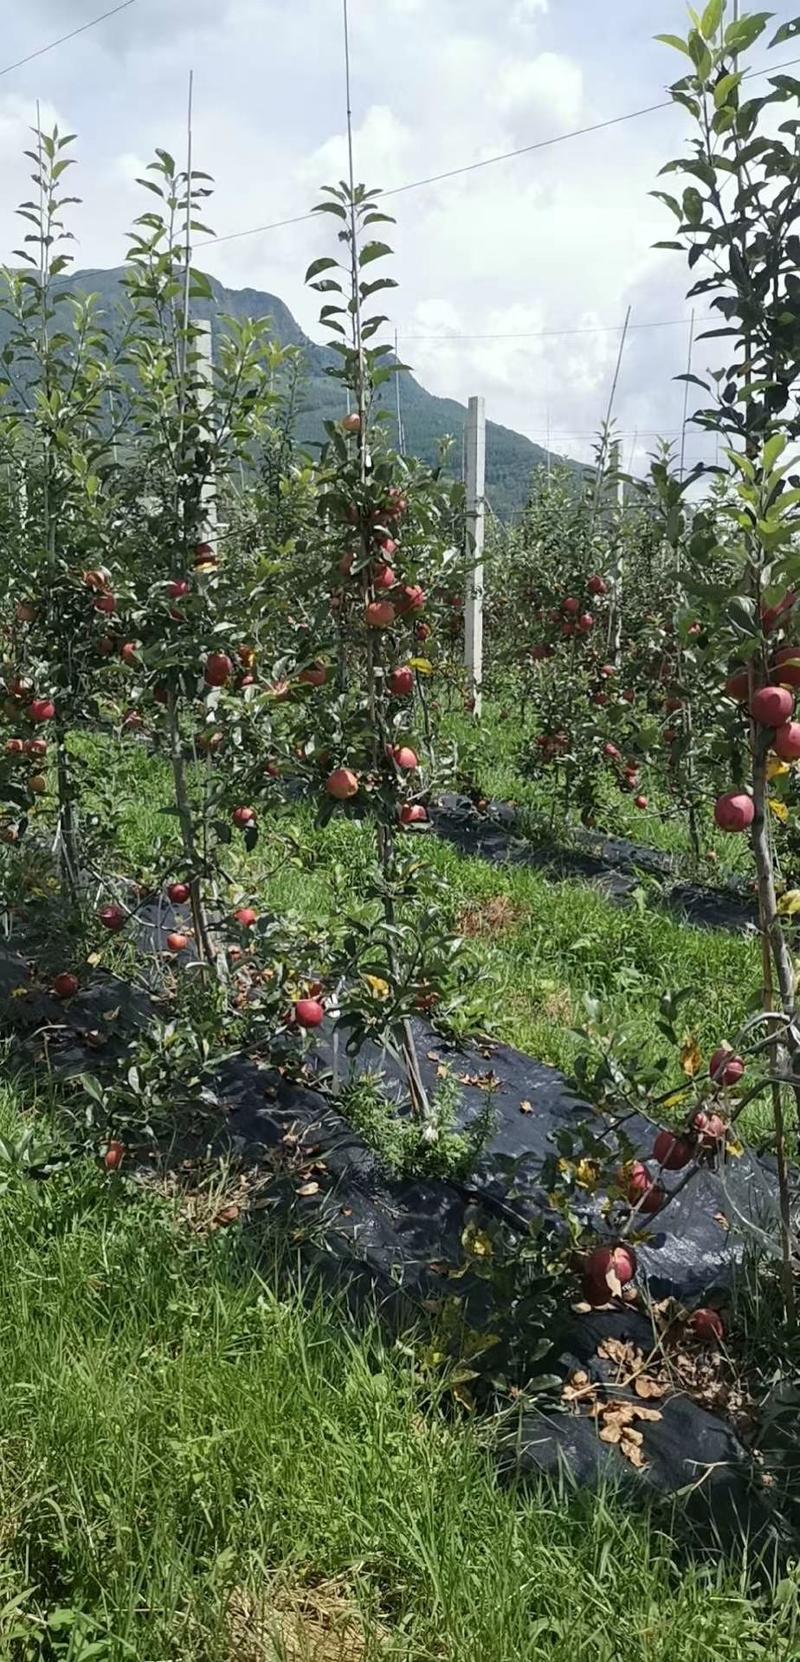 【苹果】大凉山越西红富士苹果支持电商对接全国量大优惠